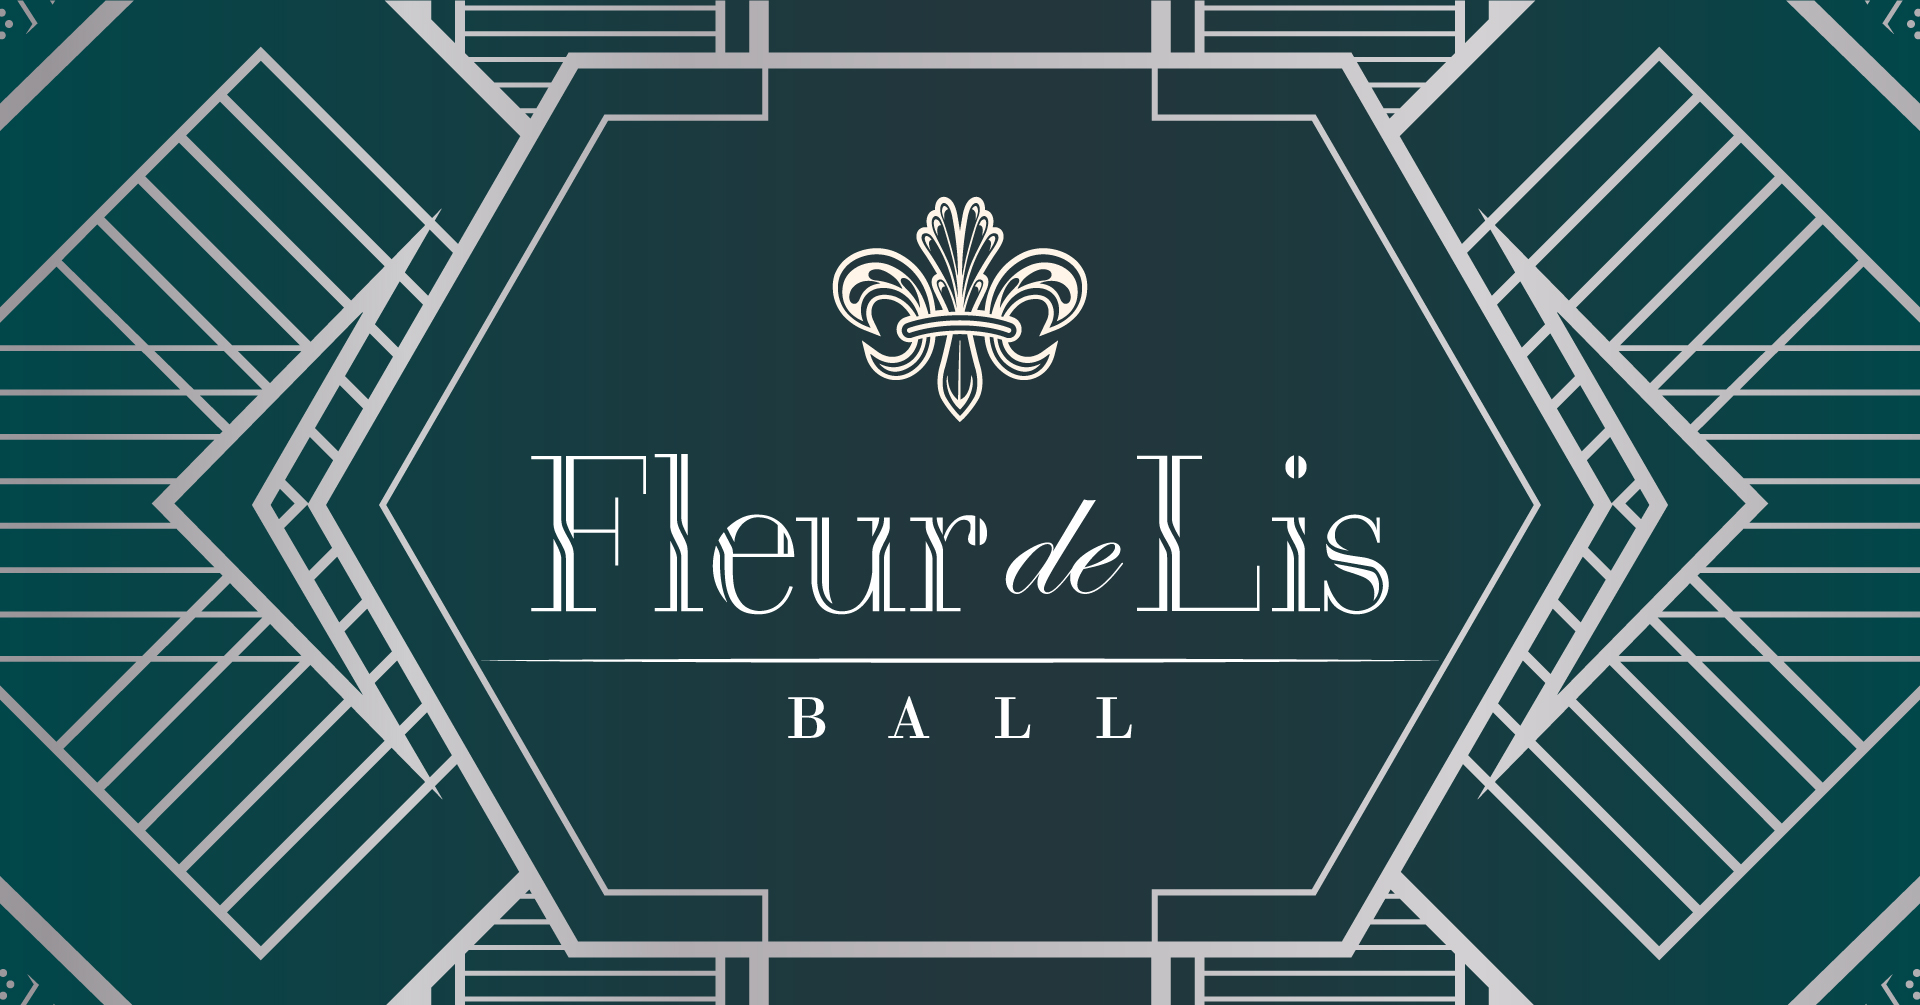 The 25th Annual Fleur de Lis Ball